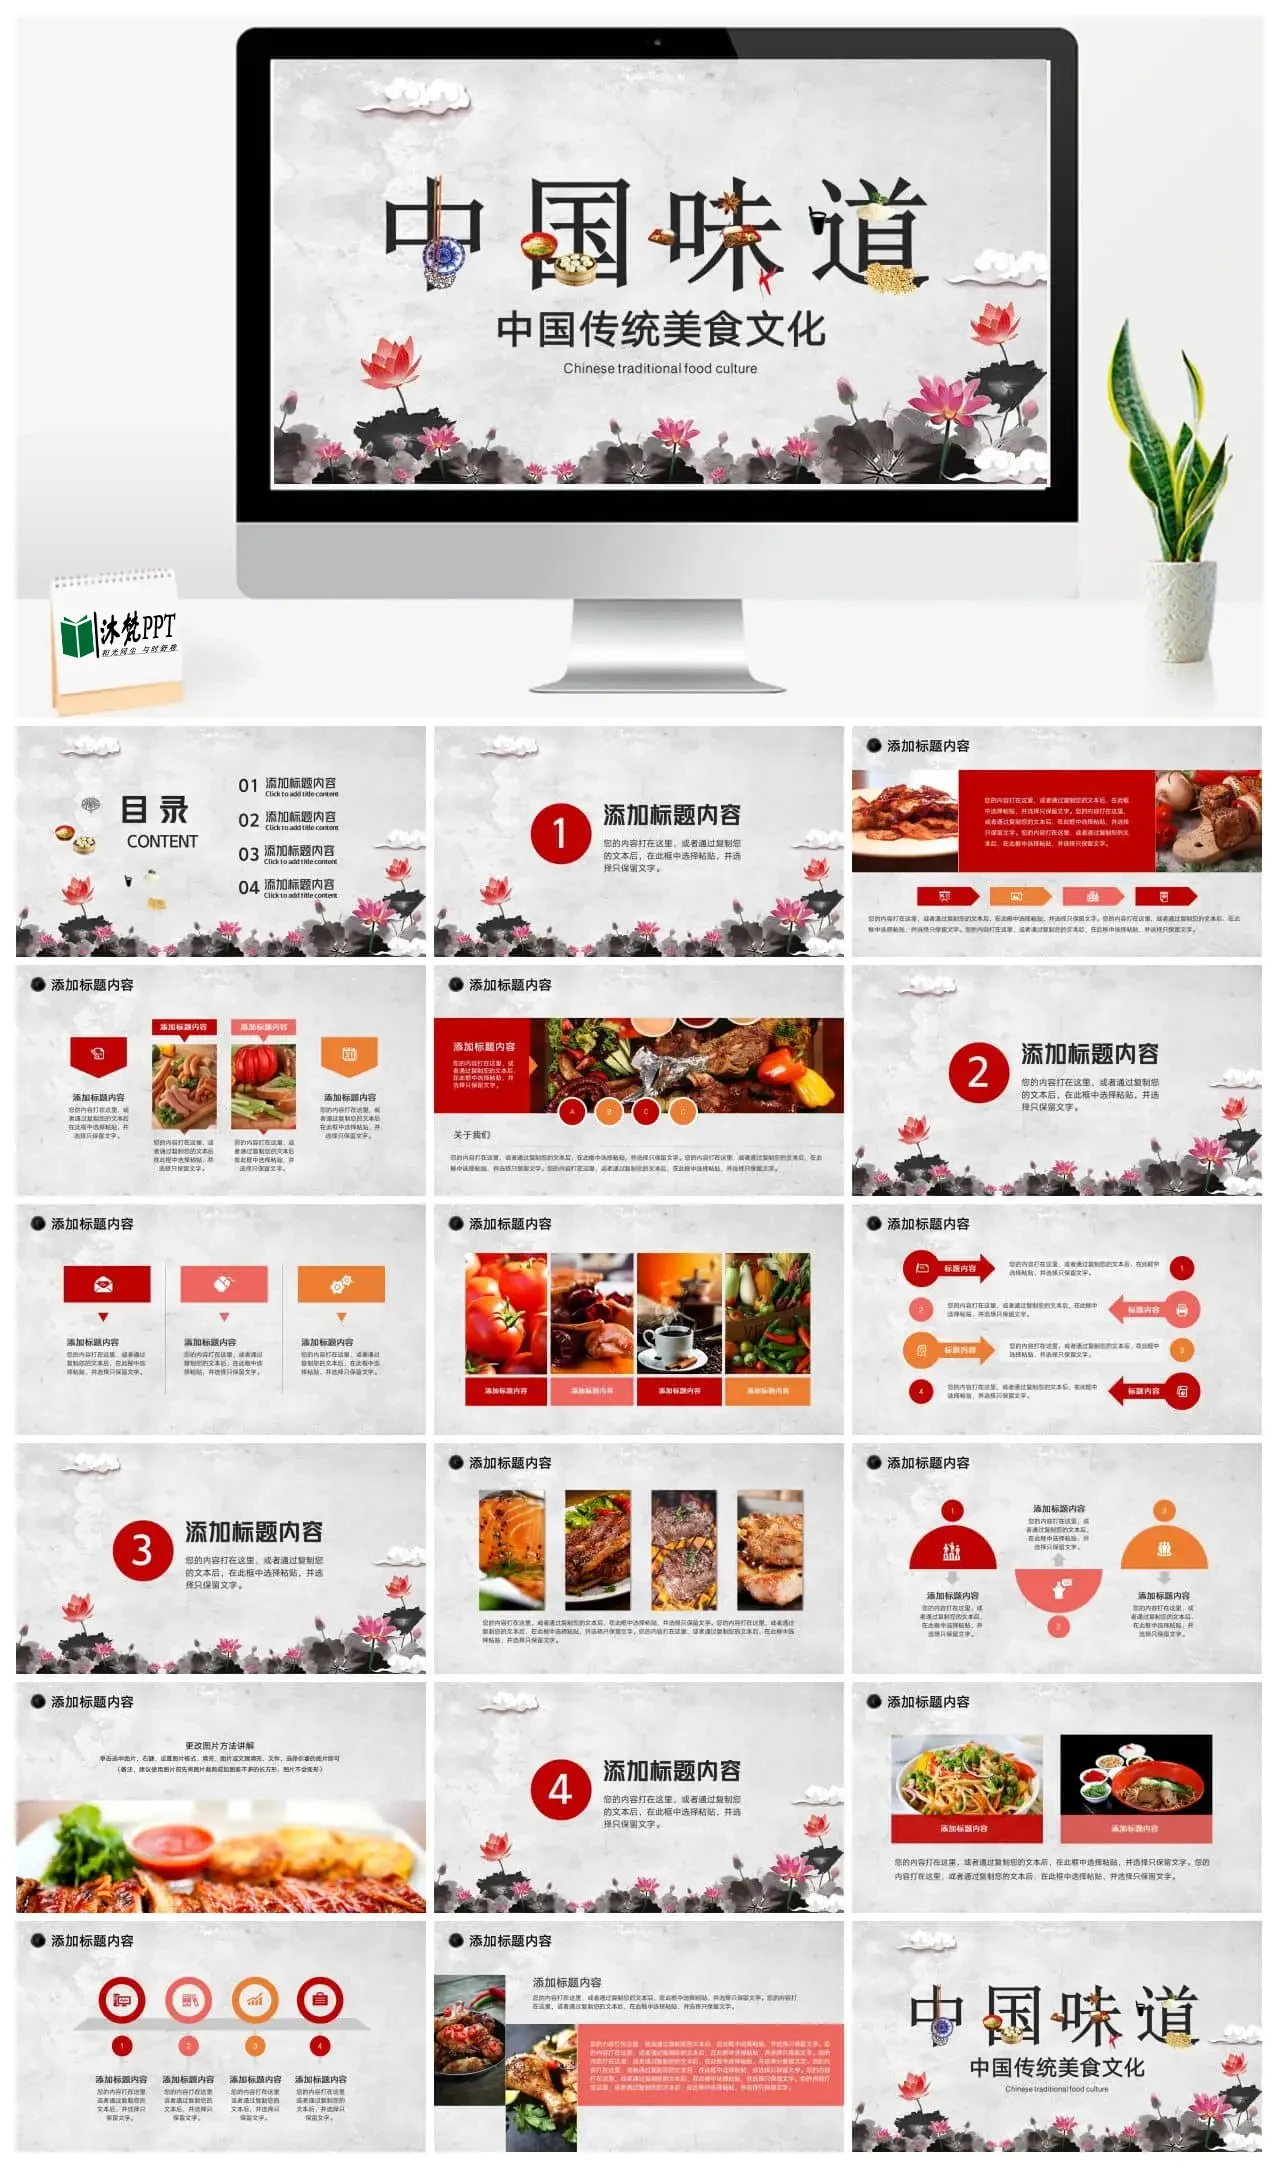 【0013】中国风传统美食介绍宣传PPT模板